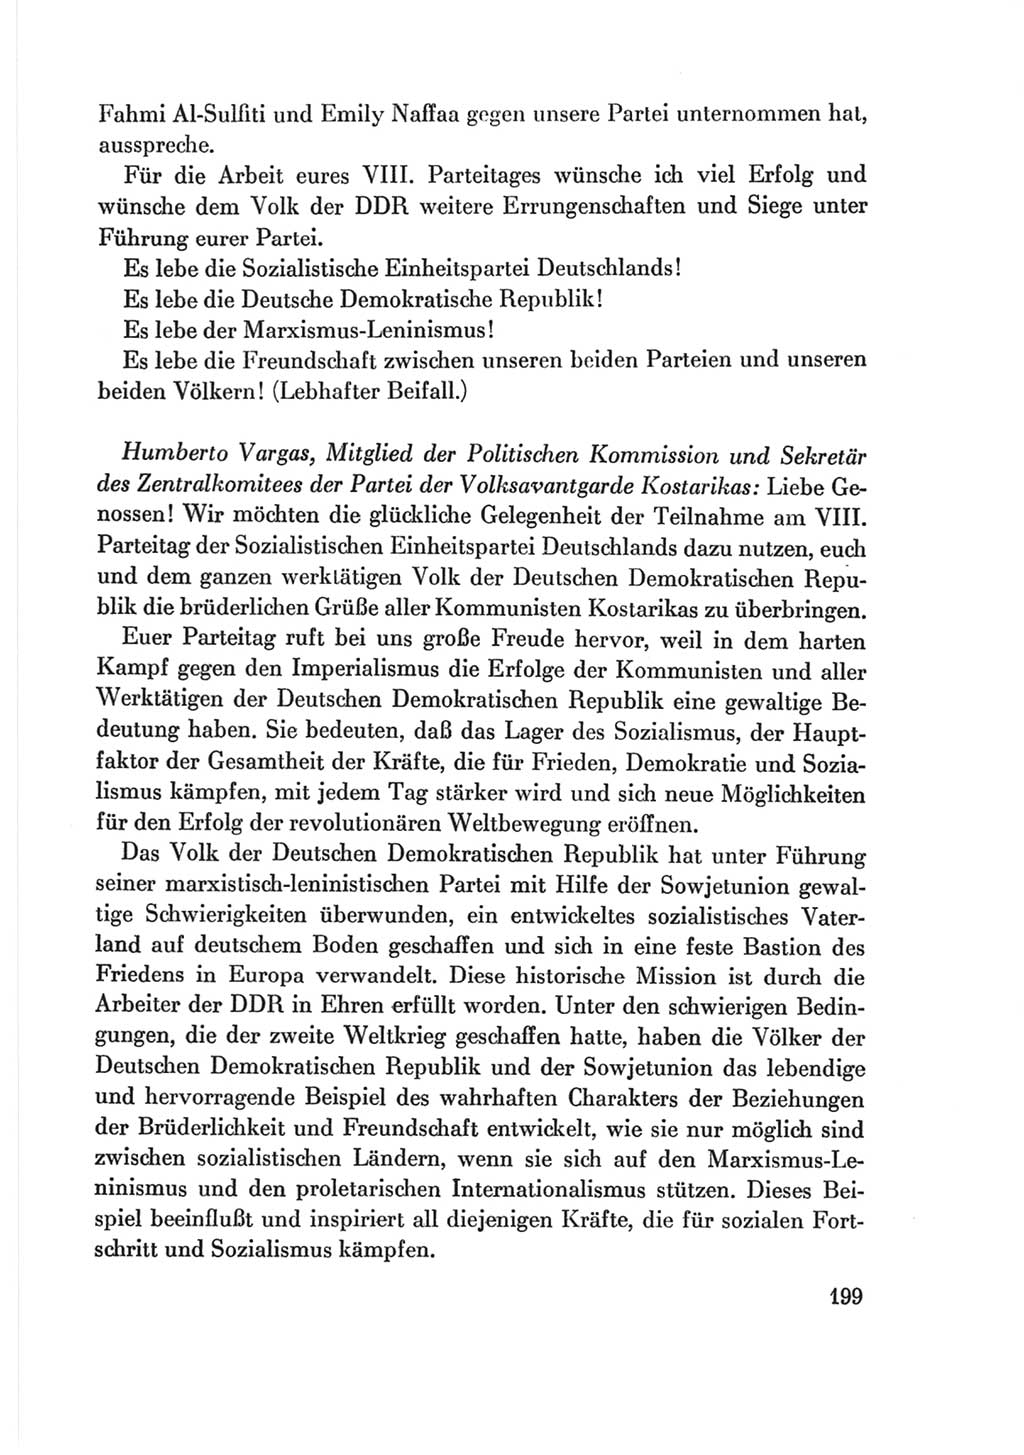 Protokoll der Verhandlungen des Ⅷ. Parteitages der Sozialistischen Einheitspartei Deutschlands (SED) [Deutsche Demokratische Republik (DDR)] 1971, Band 2, Seite 199 (Prot. Verh. Ⅷ. PT SED DDR 1971, Bd. 2, S. 199)